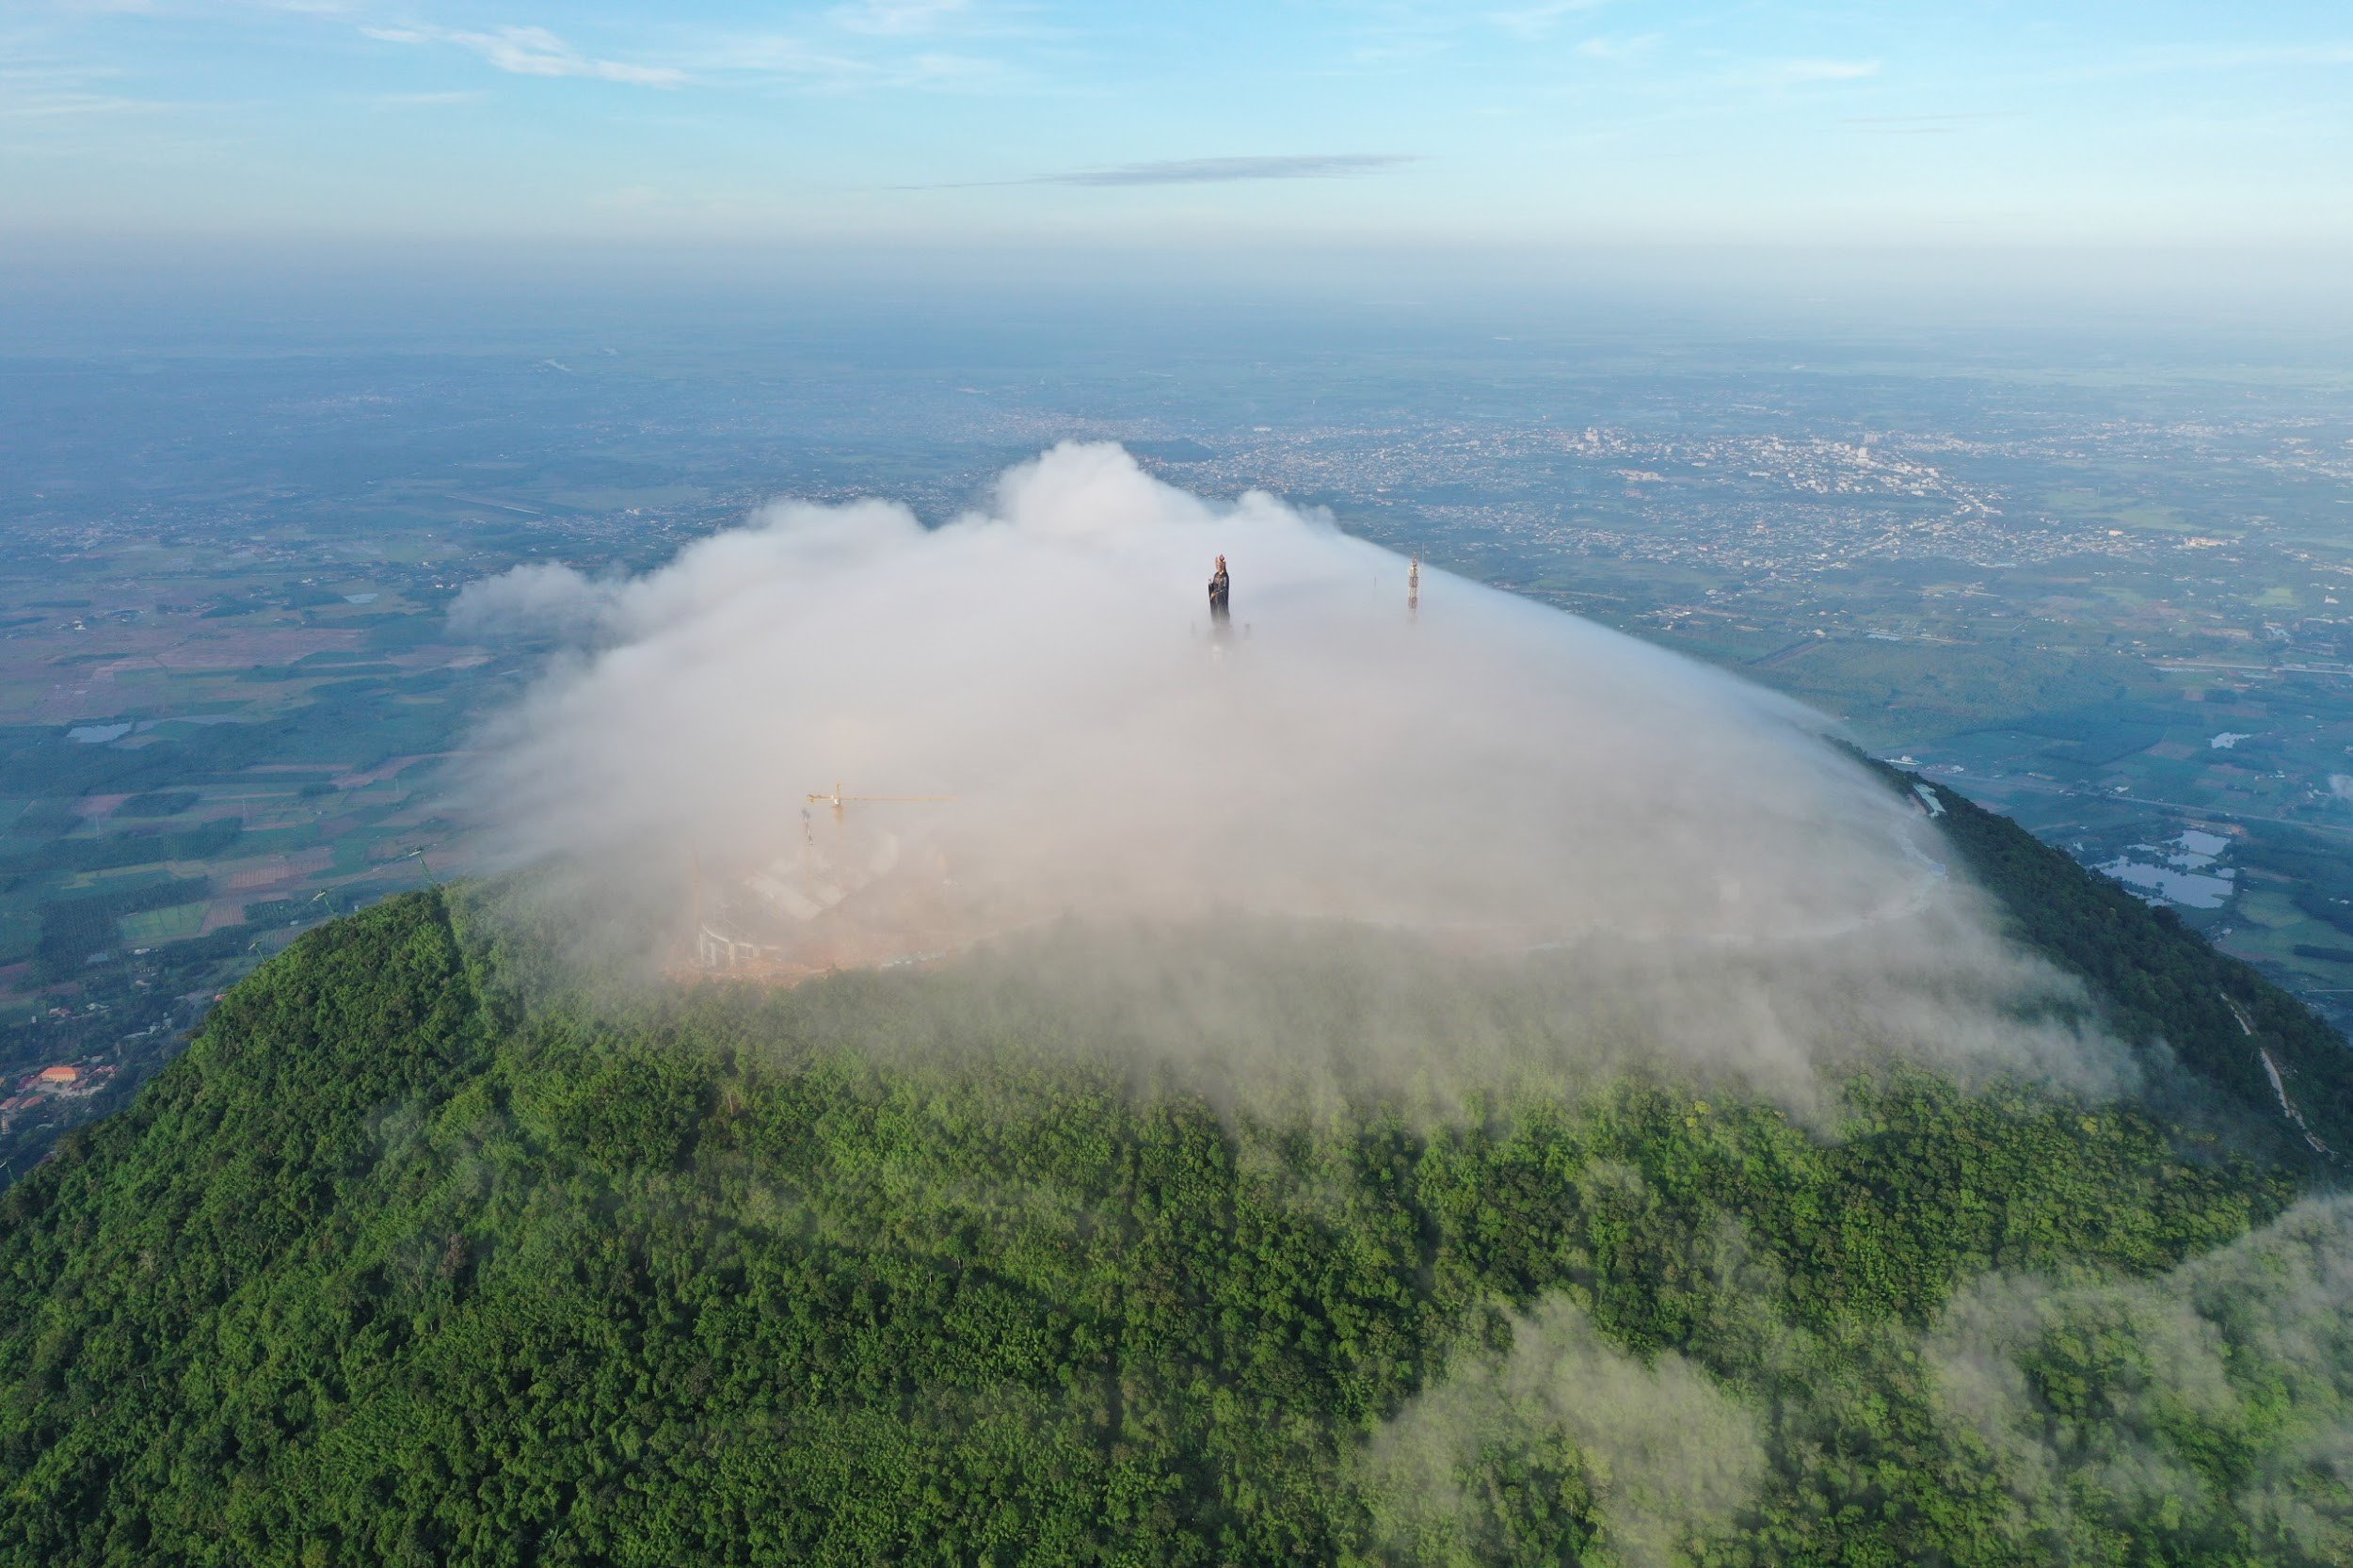 Săn mây đĩa bay tại núi Bà Đen, Tây Ninh đang hot, và đây là bí kíp - 1